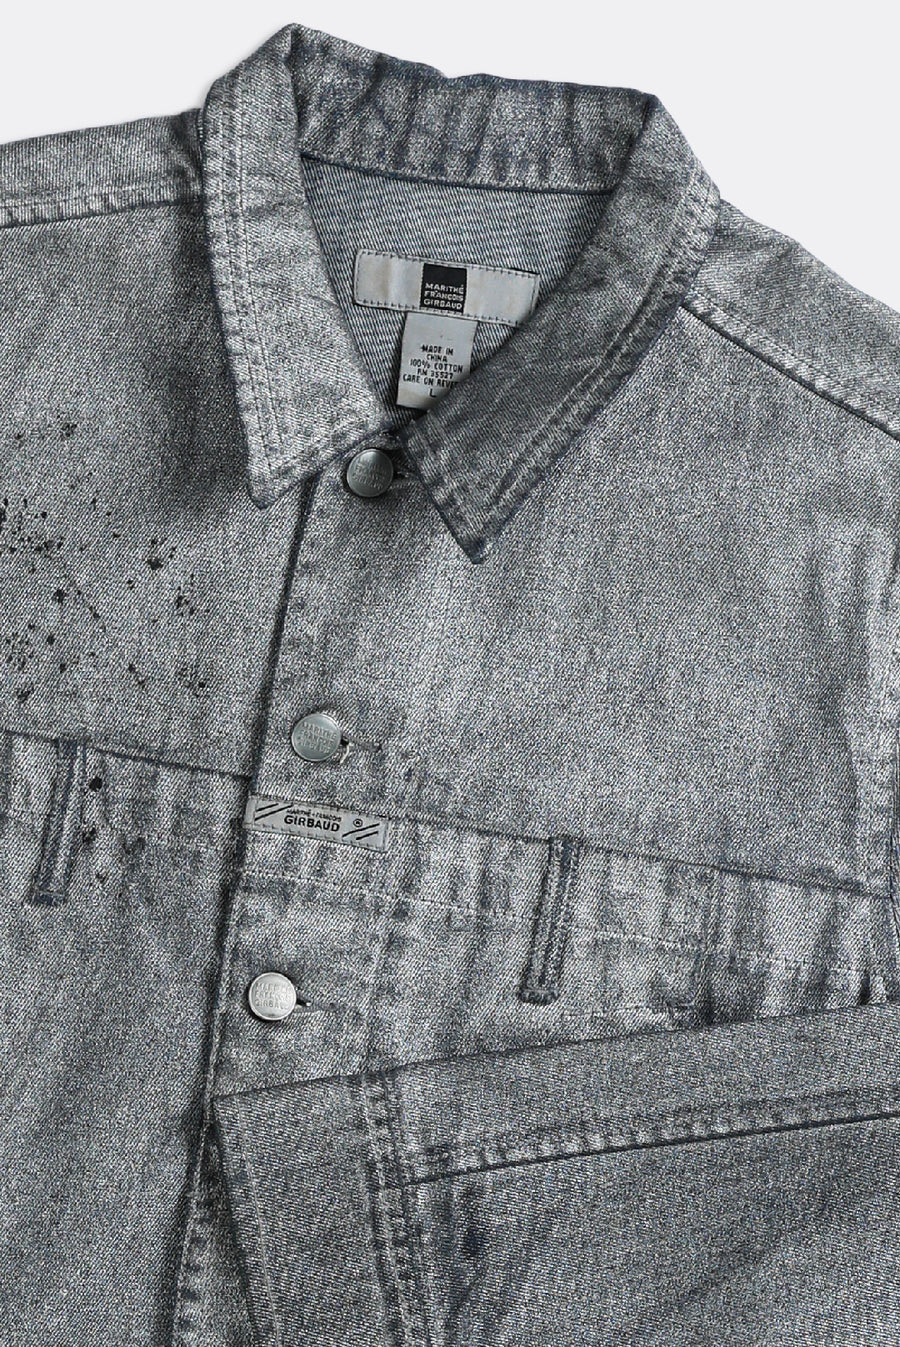 Vintage Girbaud Denim Jacket - S